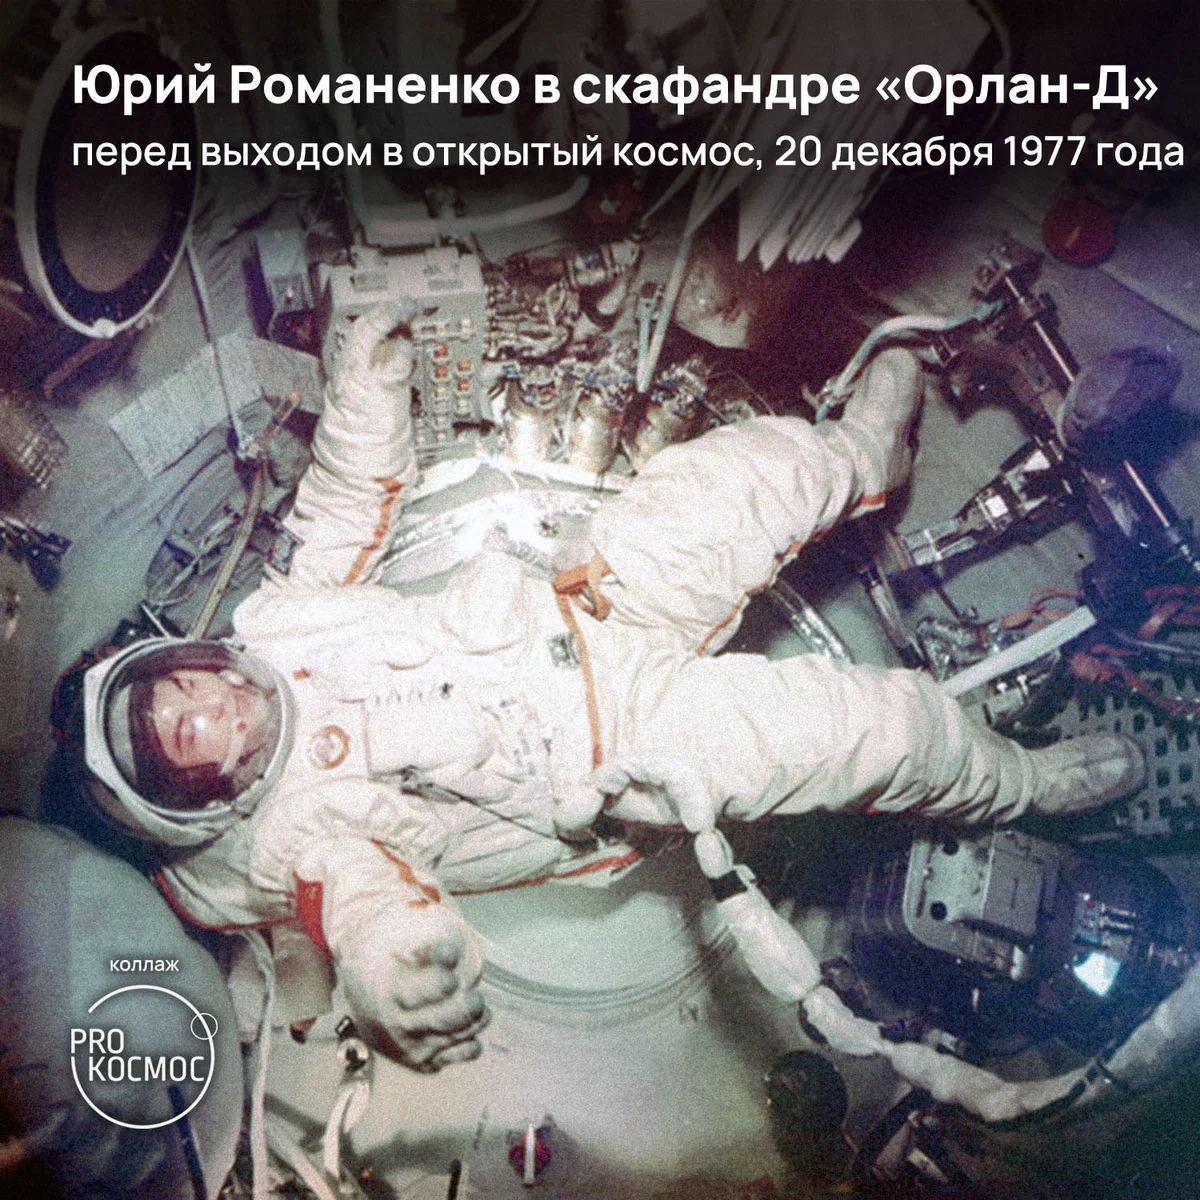 Первая международная станция: «Салют-6» для космонавтов 10 стран height=1200px width=1200px